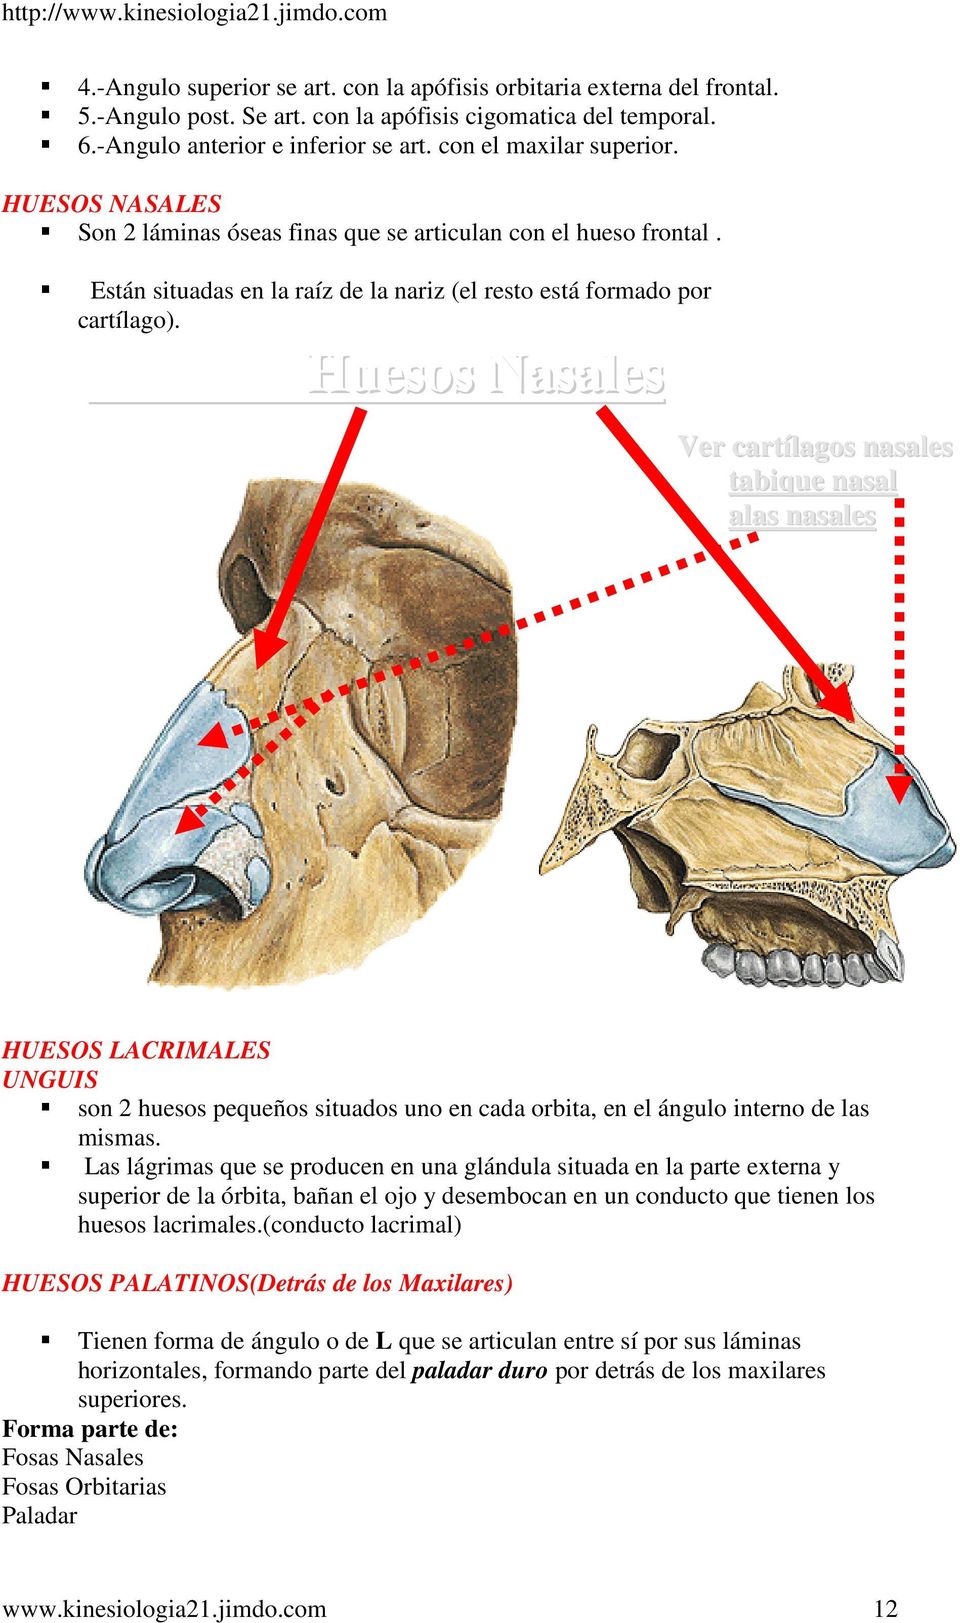 Huesos Nasales Ver cartílagos nasales tabique nasal alas nasales HUESOS LACRIMALES UNGUIS son 2 huesos pequeños situados uno en cada orbita, en el ángulo interno de las mismas.